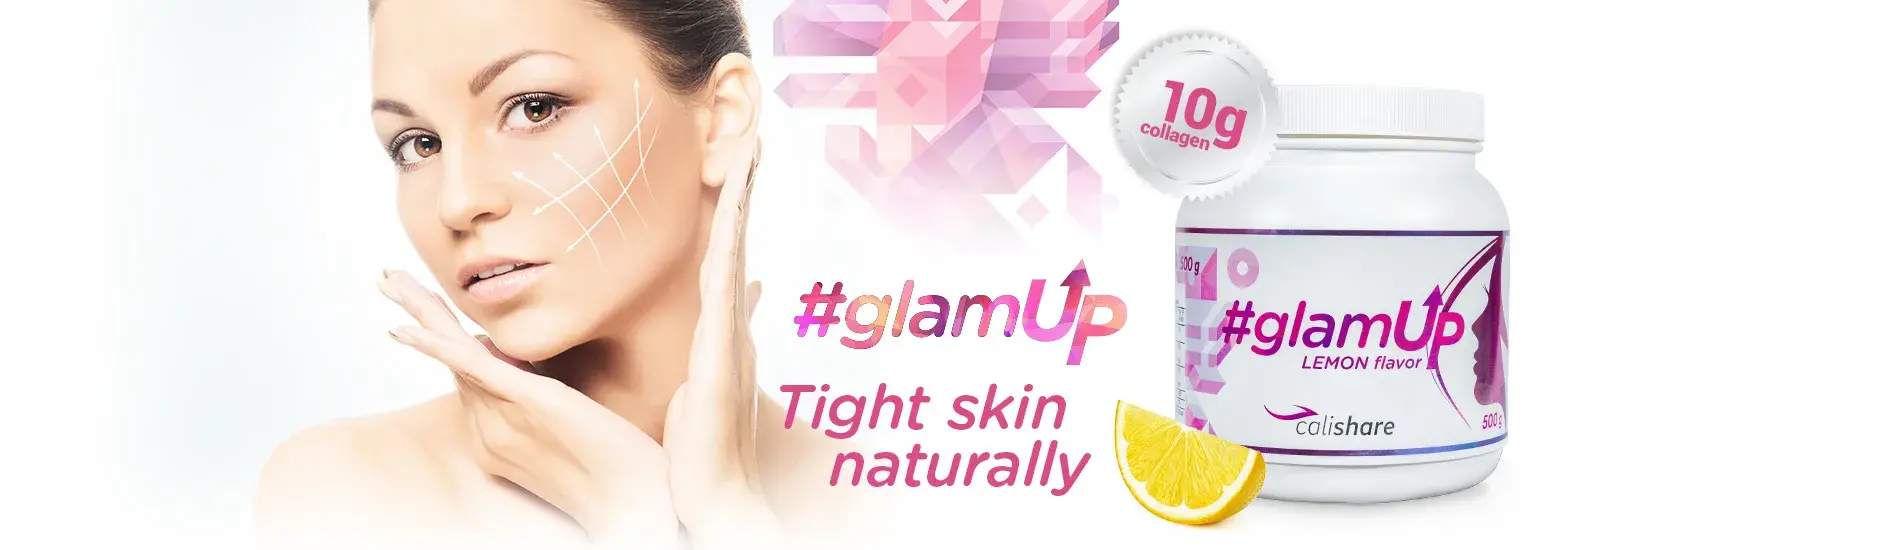 #Glamup - Įtempta oda natūraliai